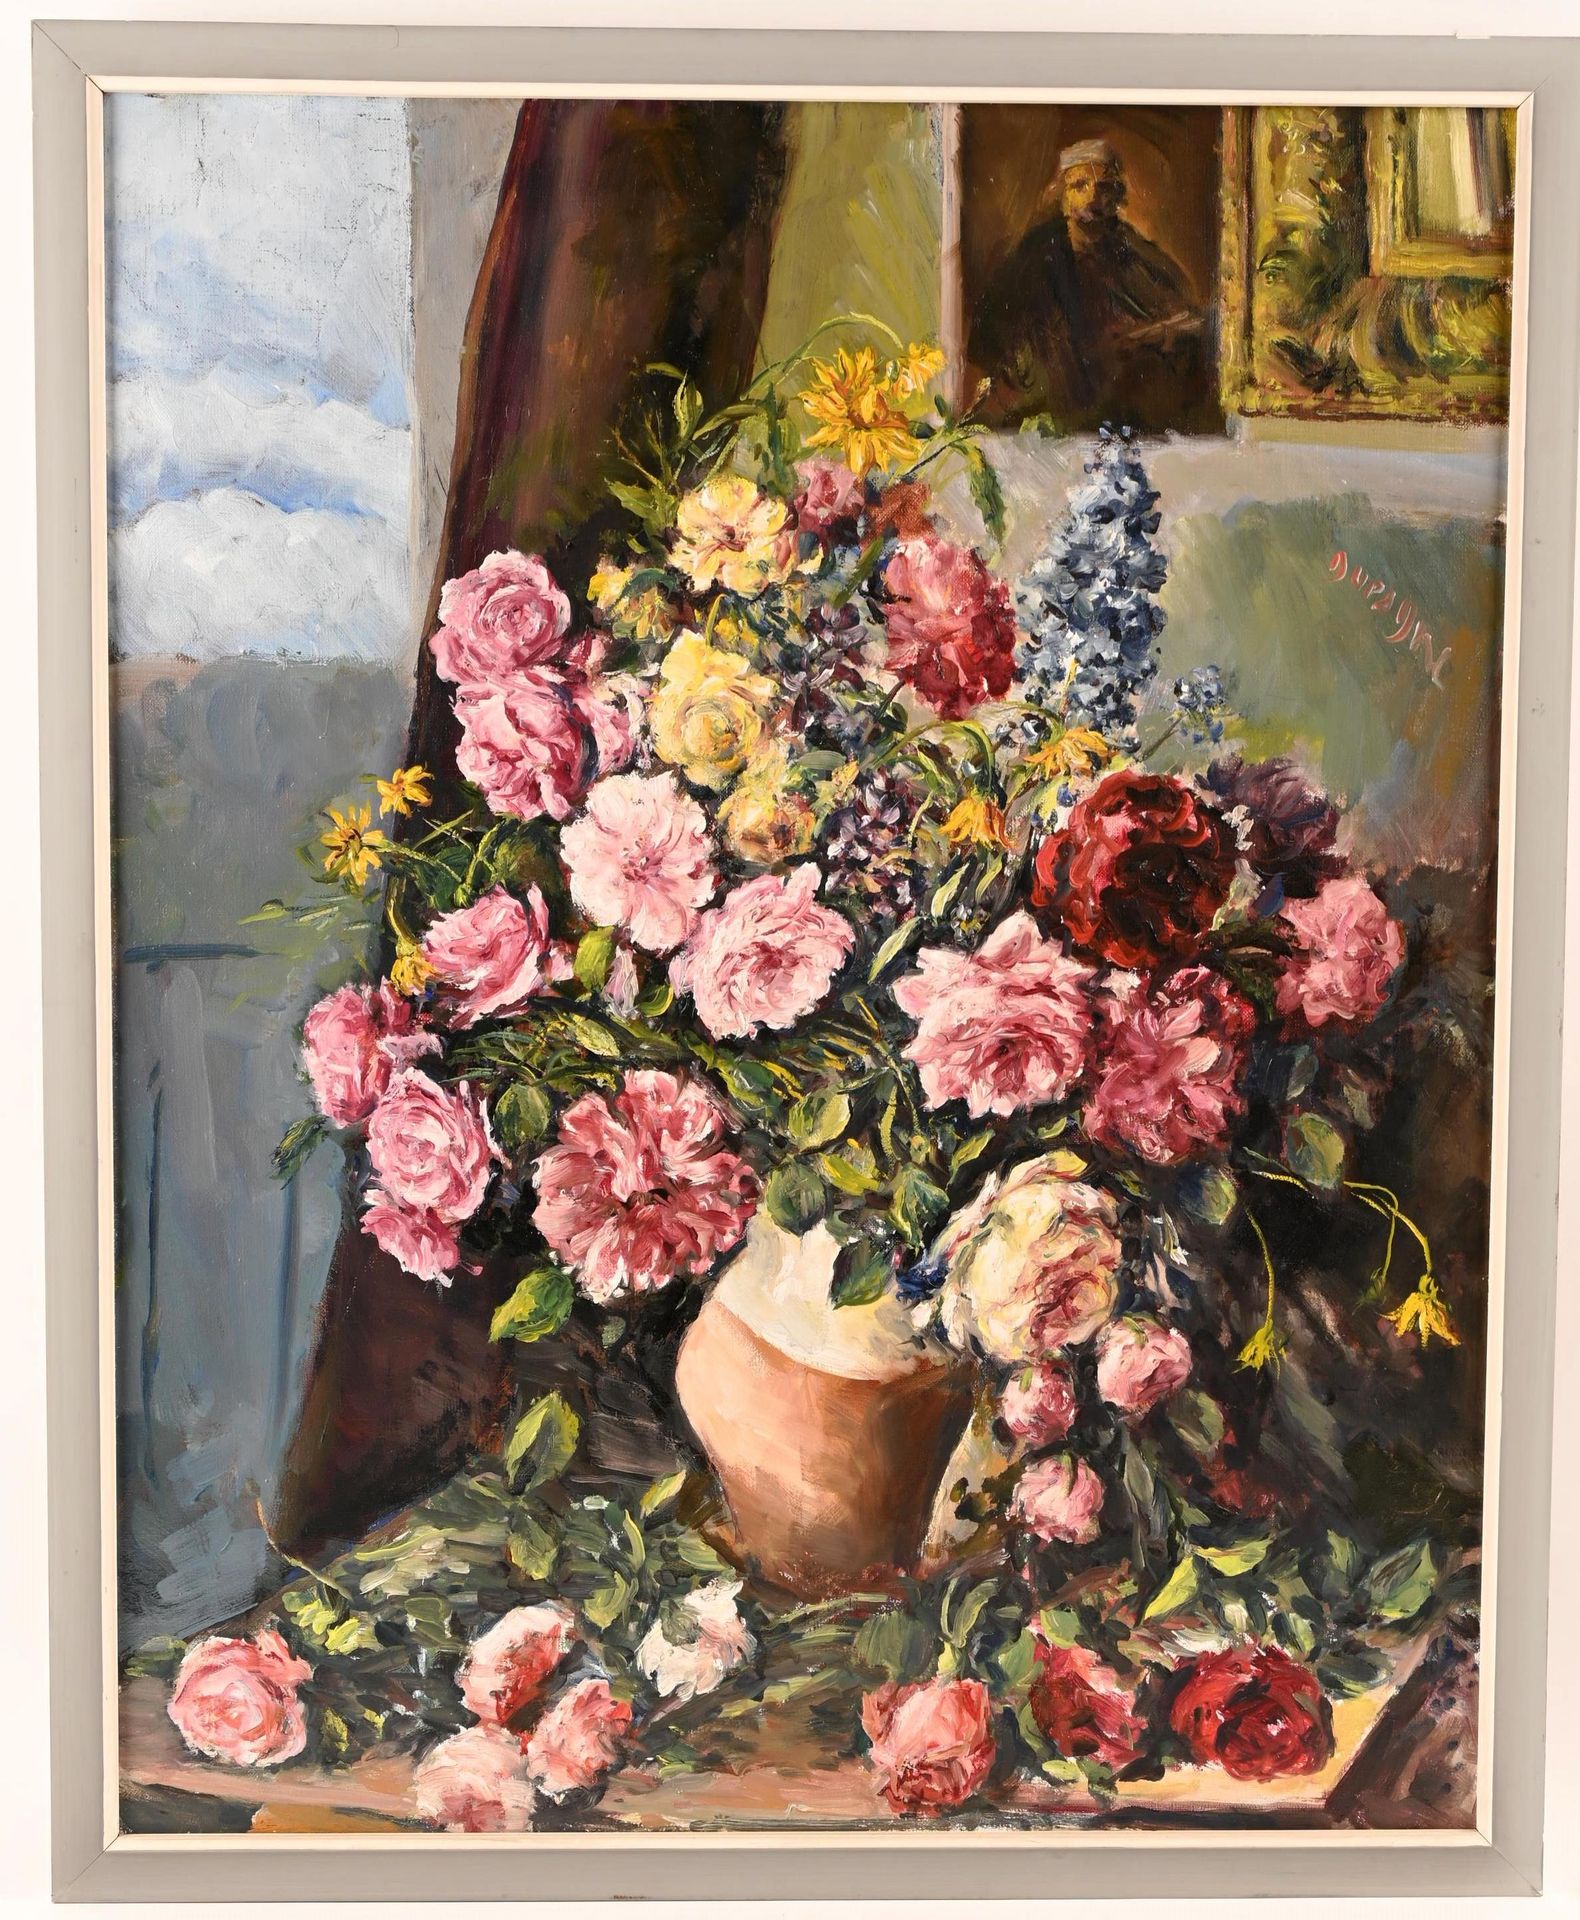 Adrien DUPAGNE (1889-1980 Adrien DUPAGNE (1889-1980)

" Blühender Blumenstrauß i&hellip;